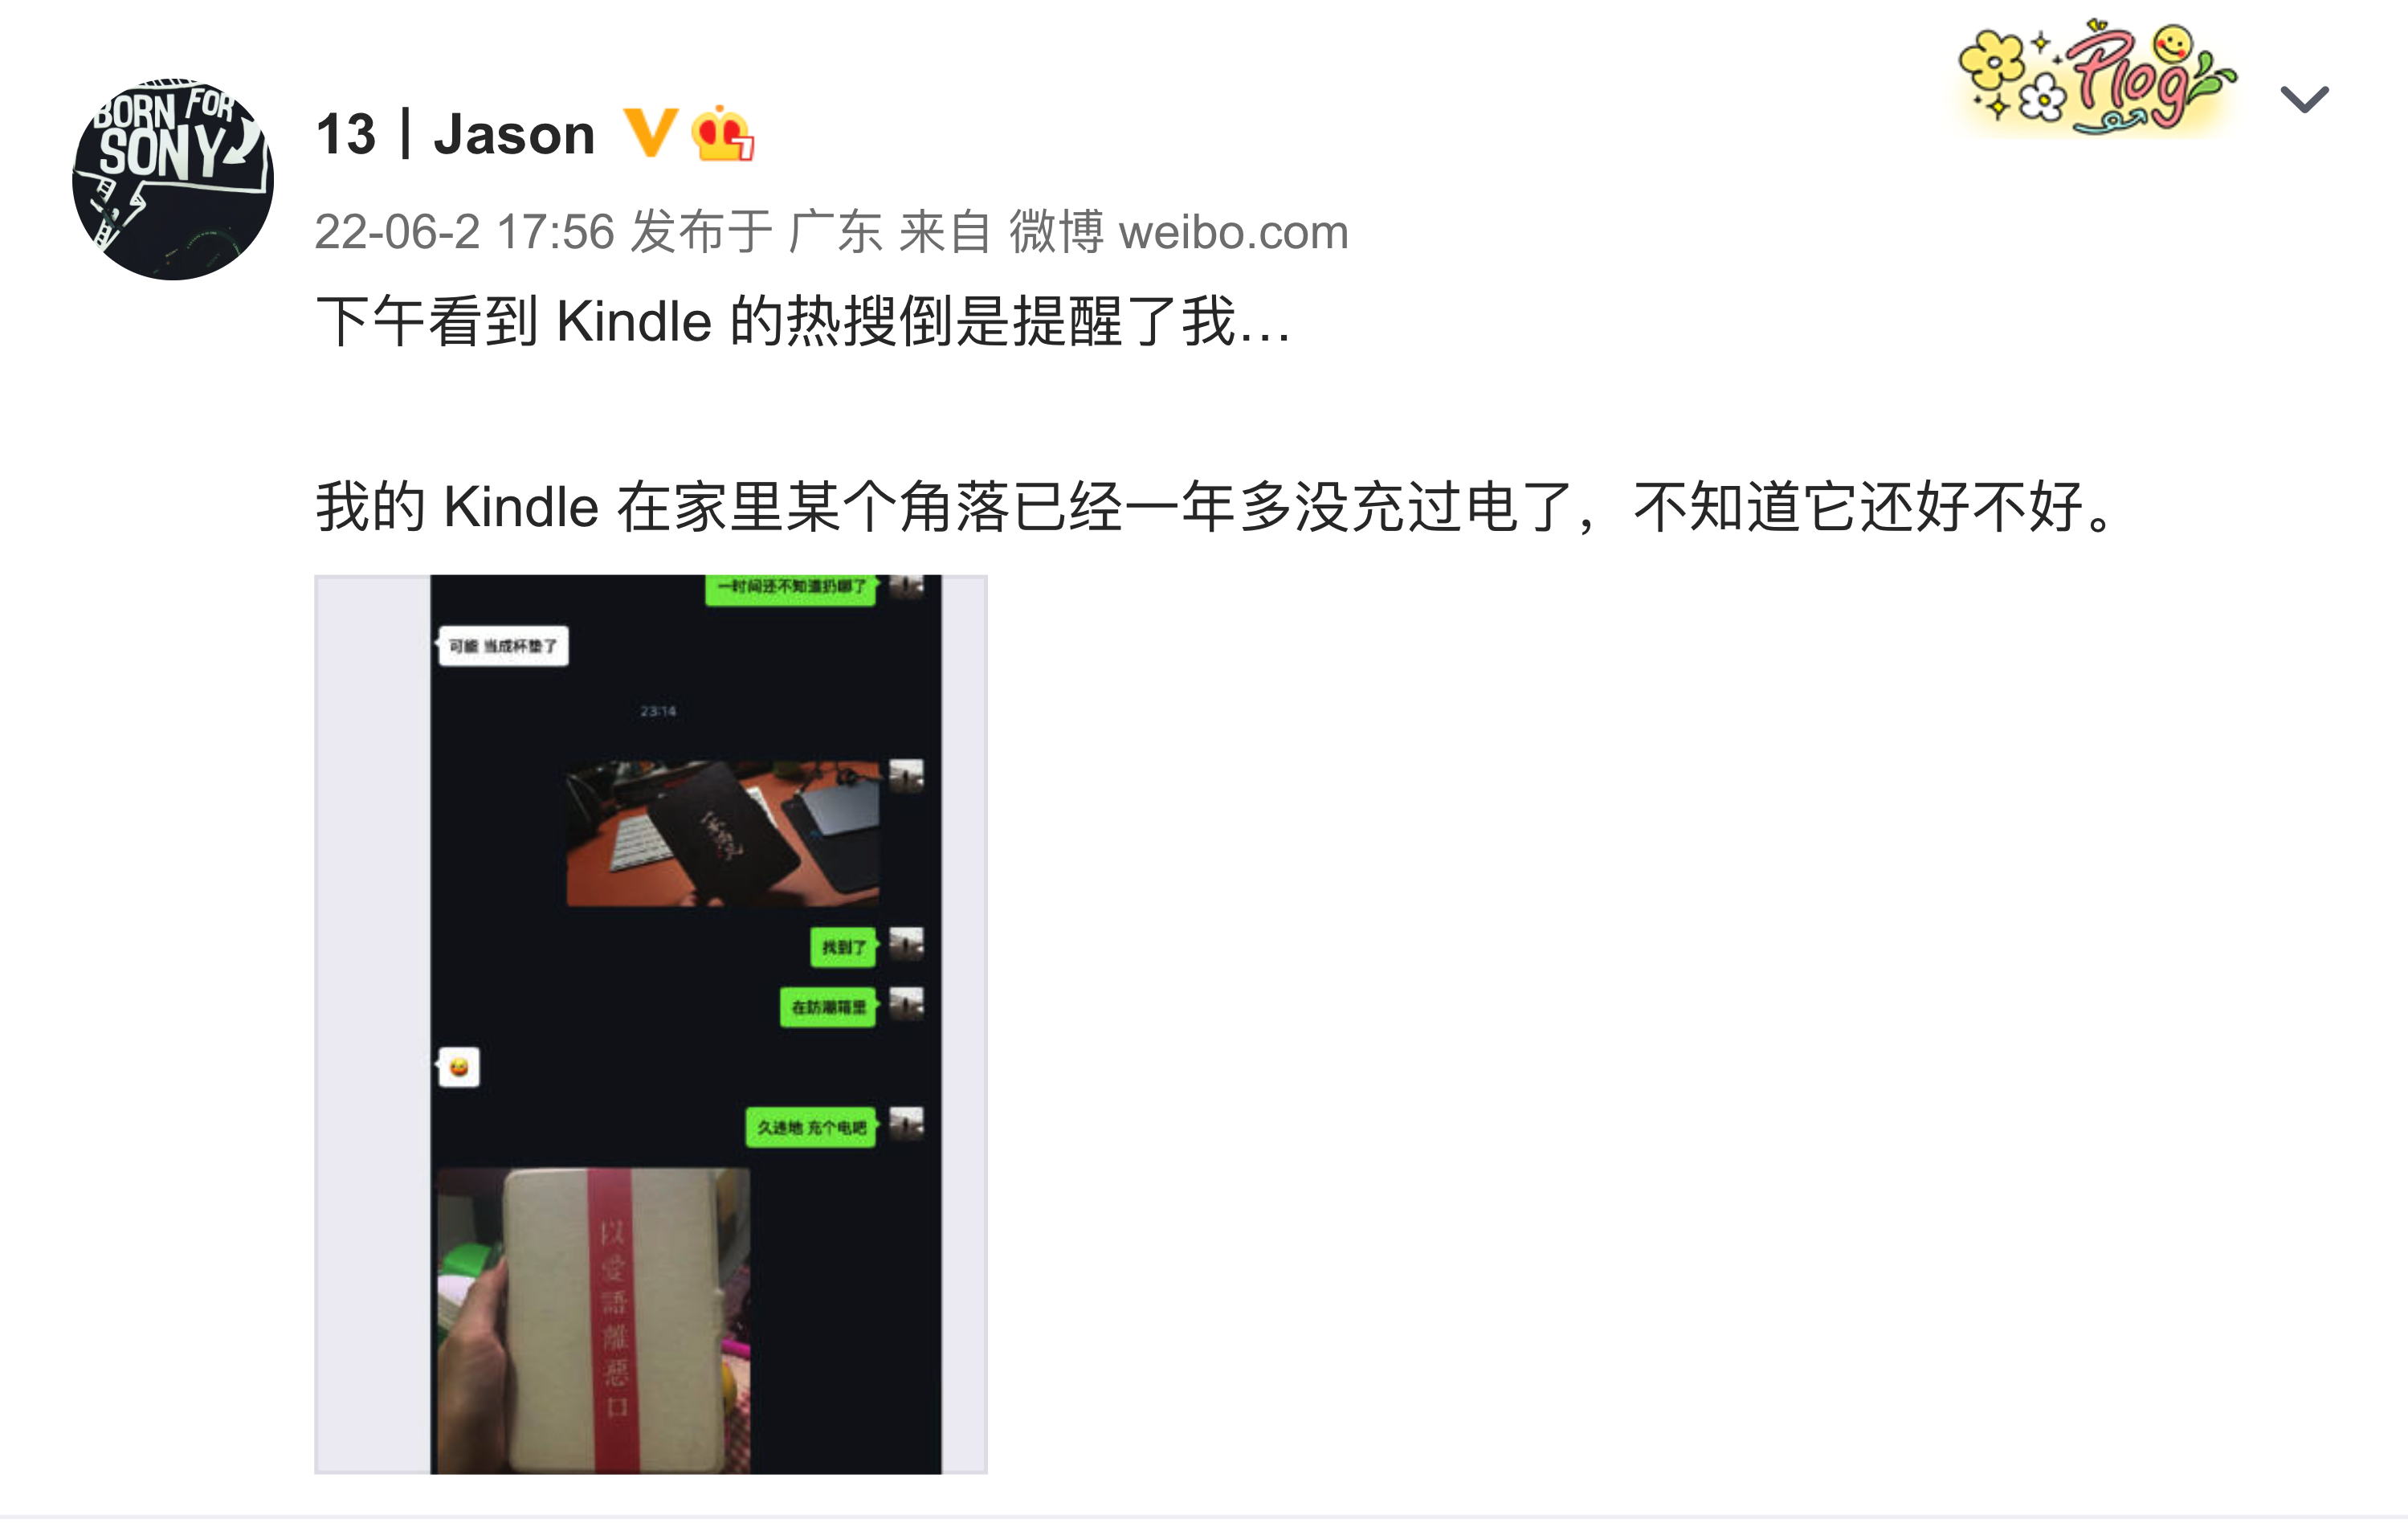 WechatIMG154 - impreparato! Kindle ha annunciato di smettere di operare in Cina, l ‘”ascensore” del progresso è caduto improvvisamente